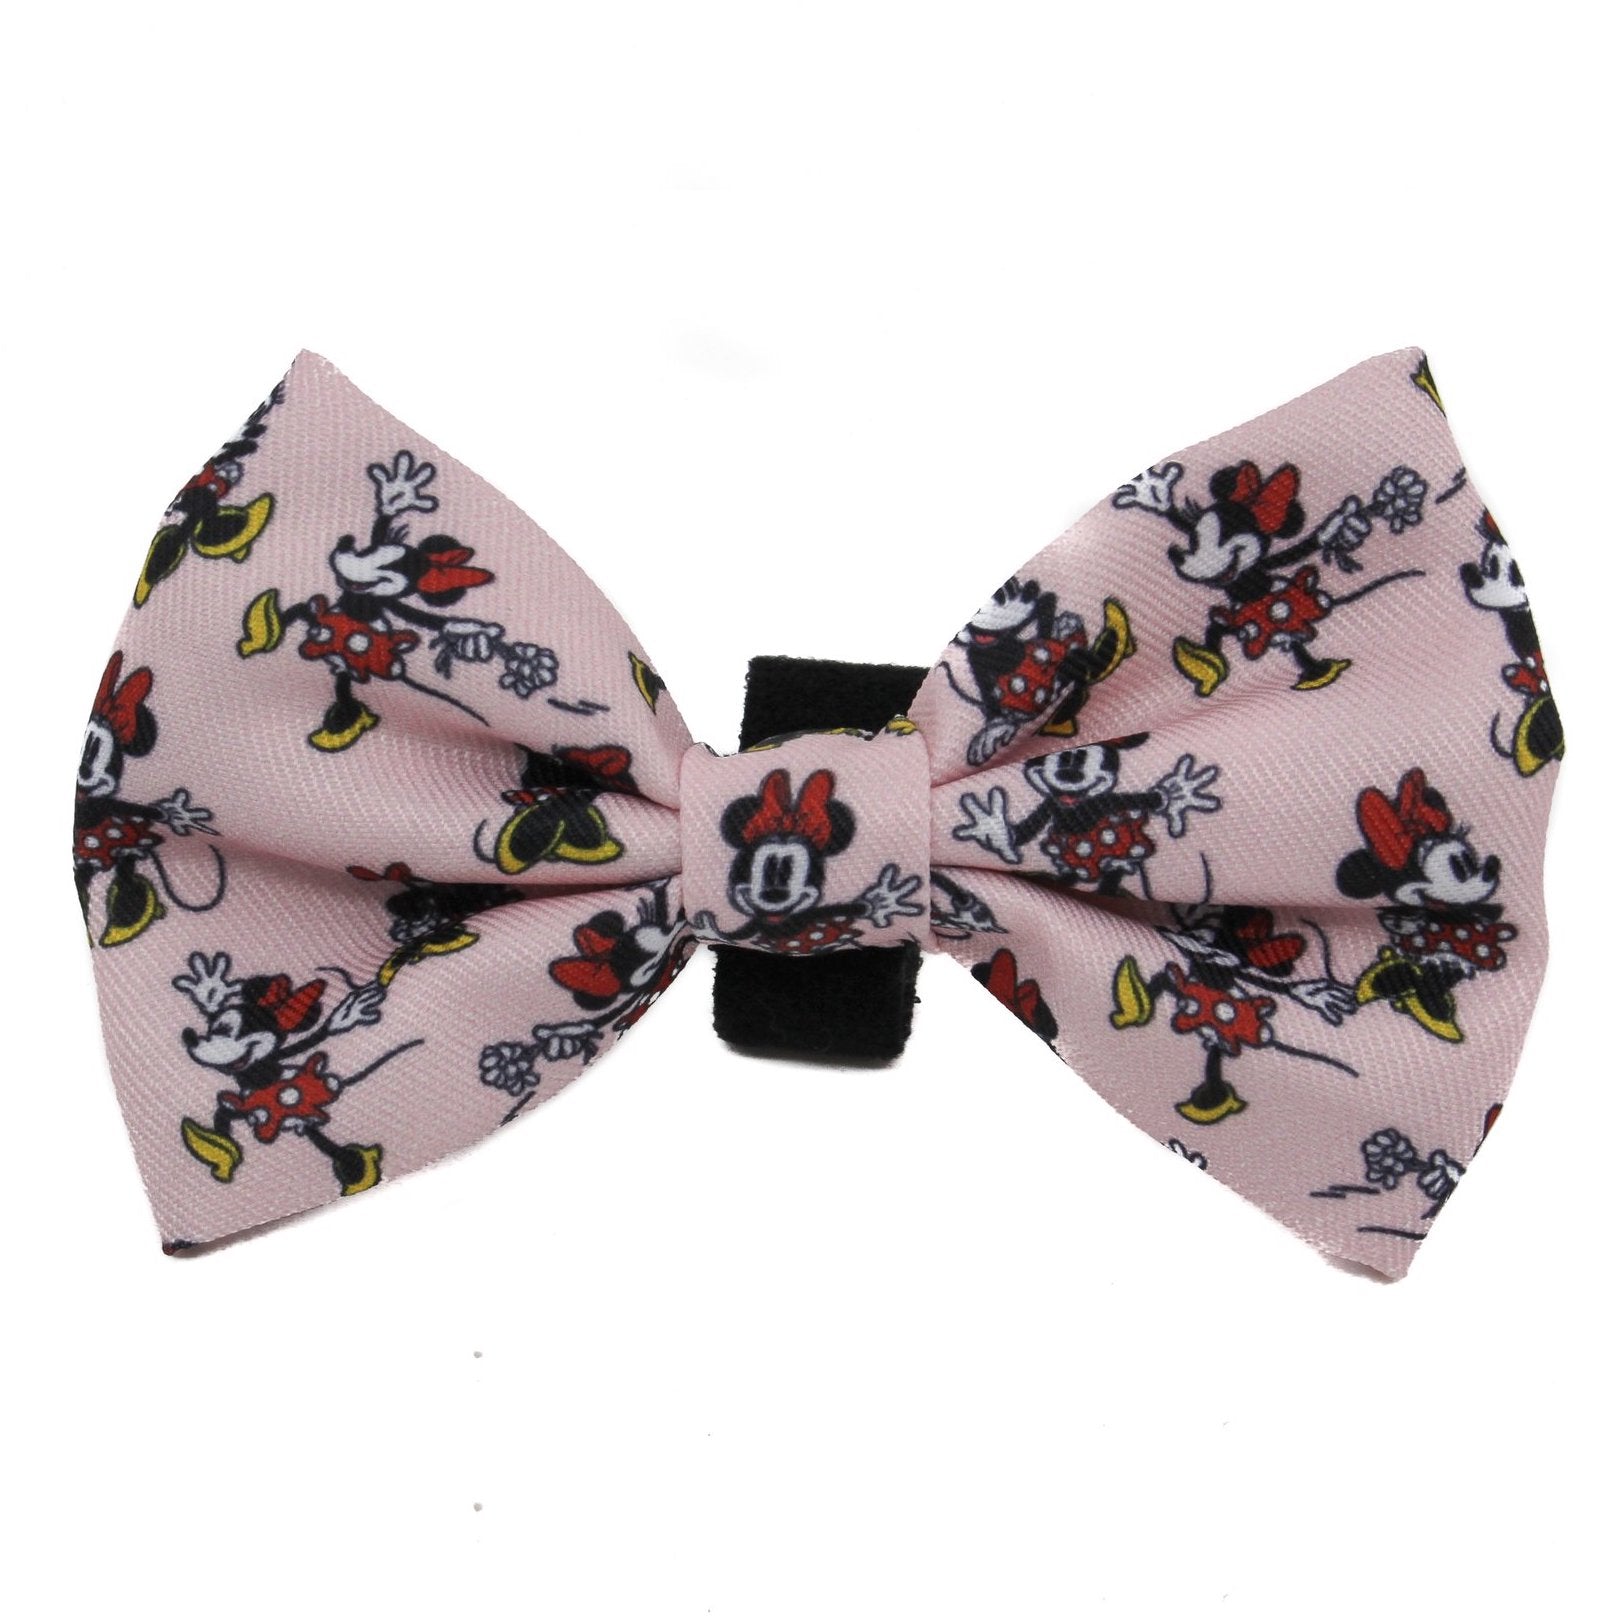 PABLO & CO x DISNEY - Minnie Mouse & Flowers Bowtie